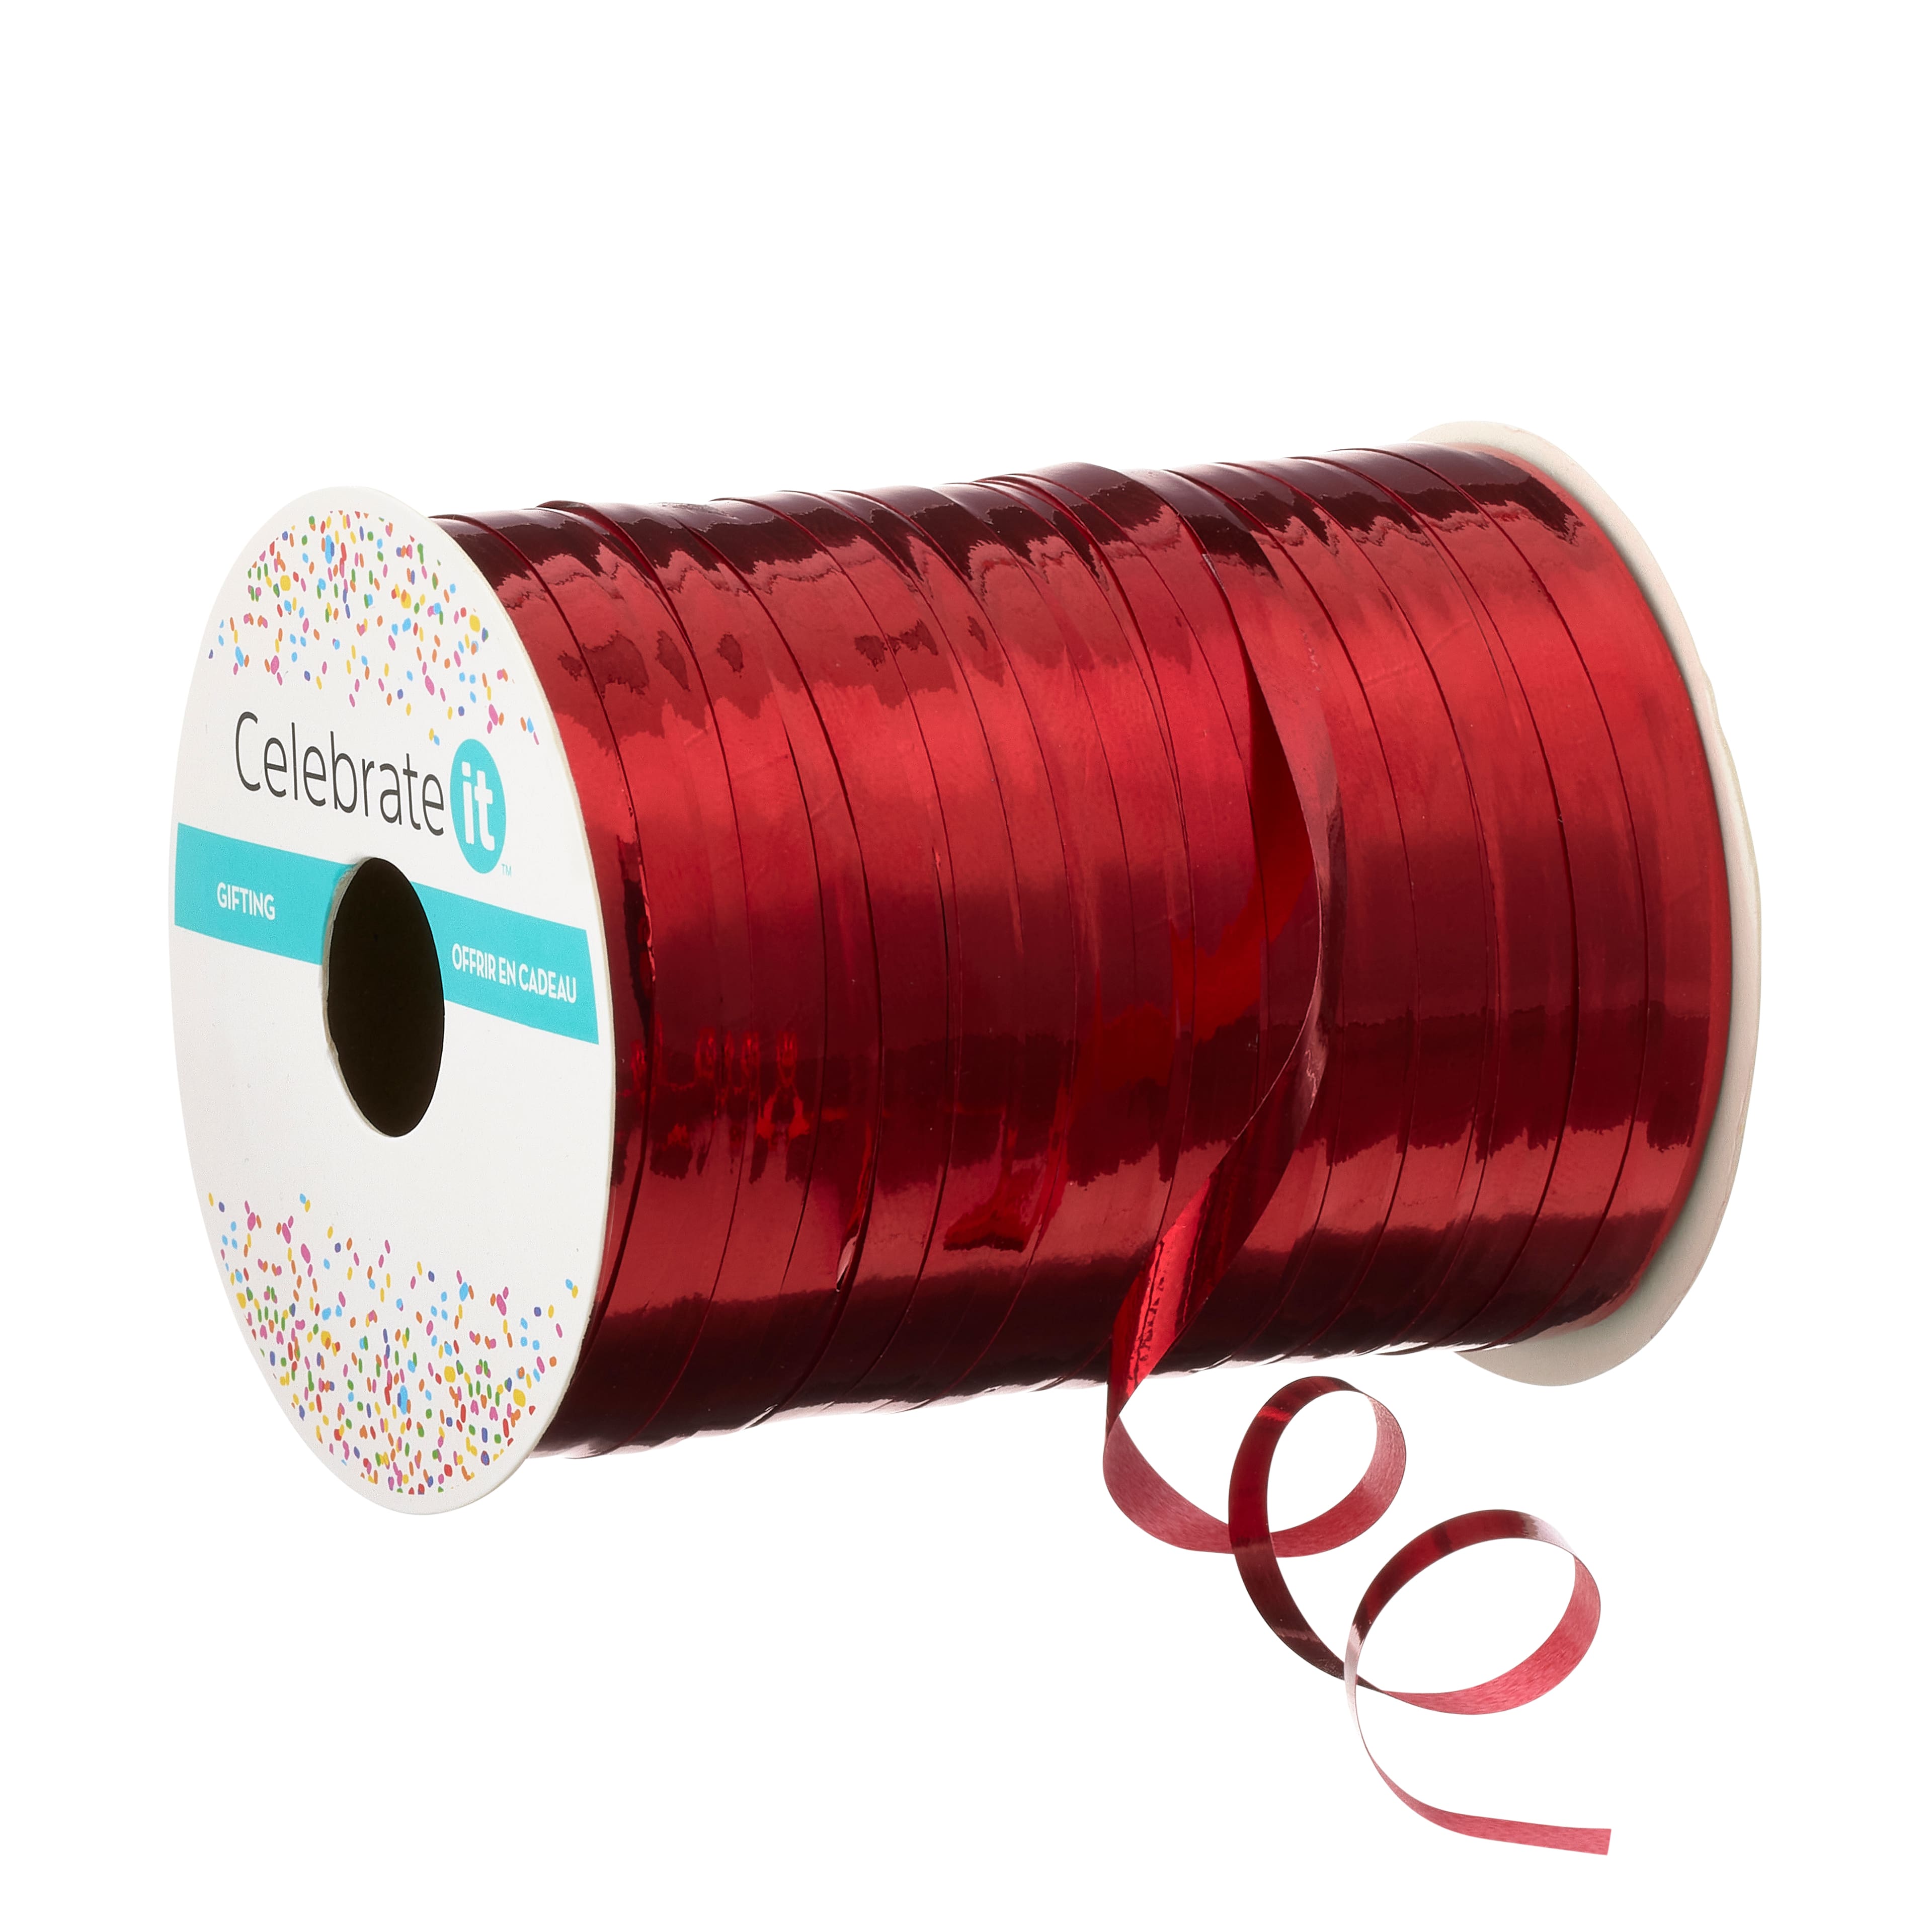 Metallic Red Curling Ribbon